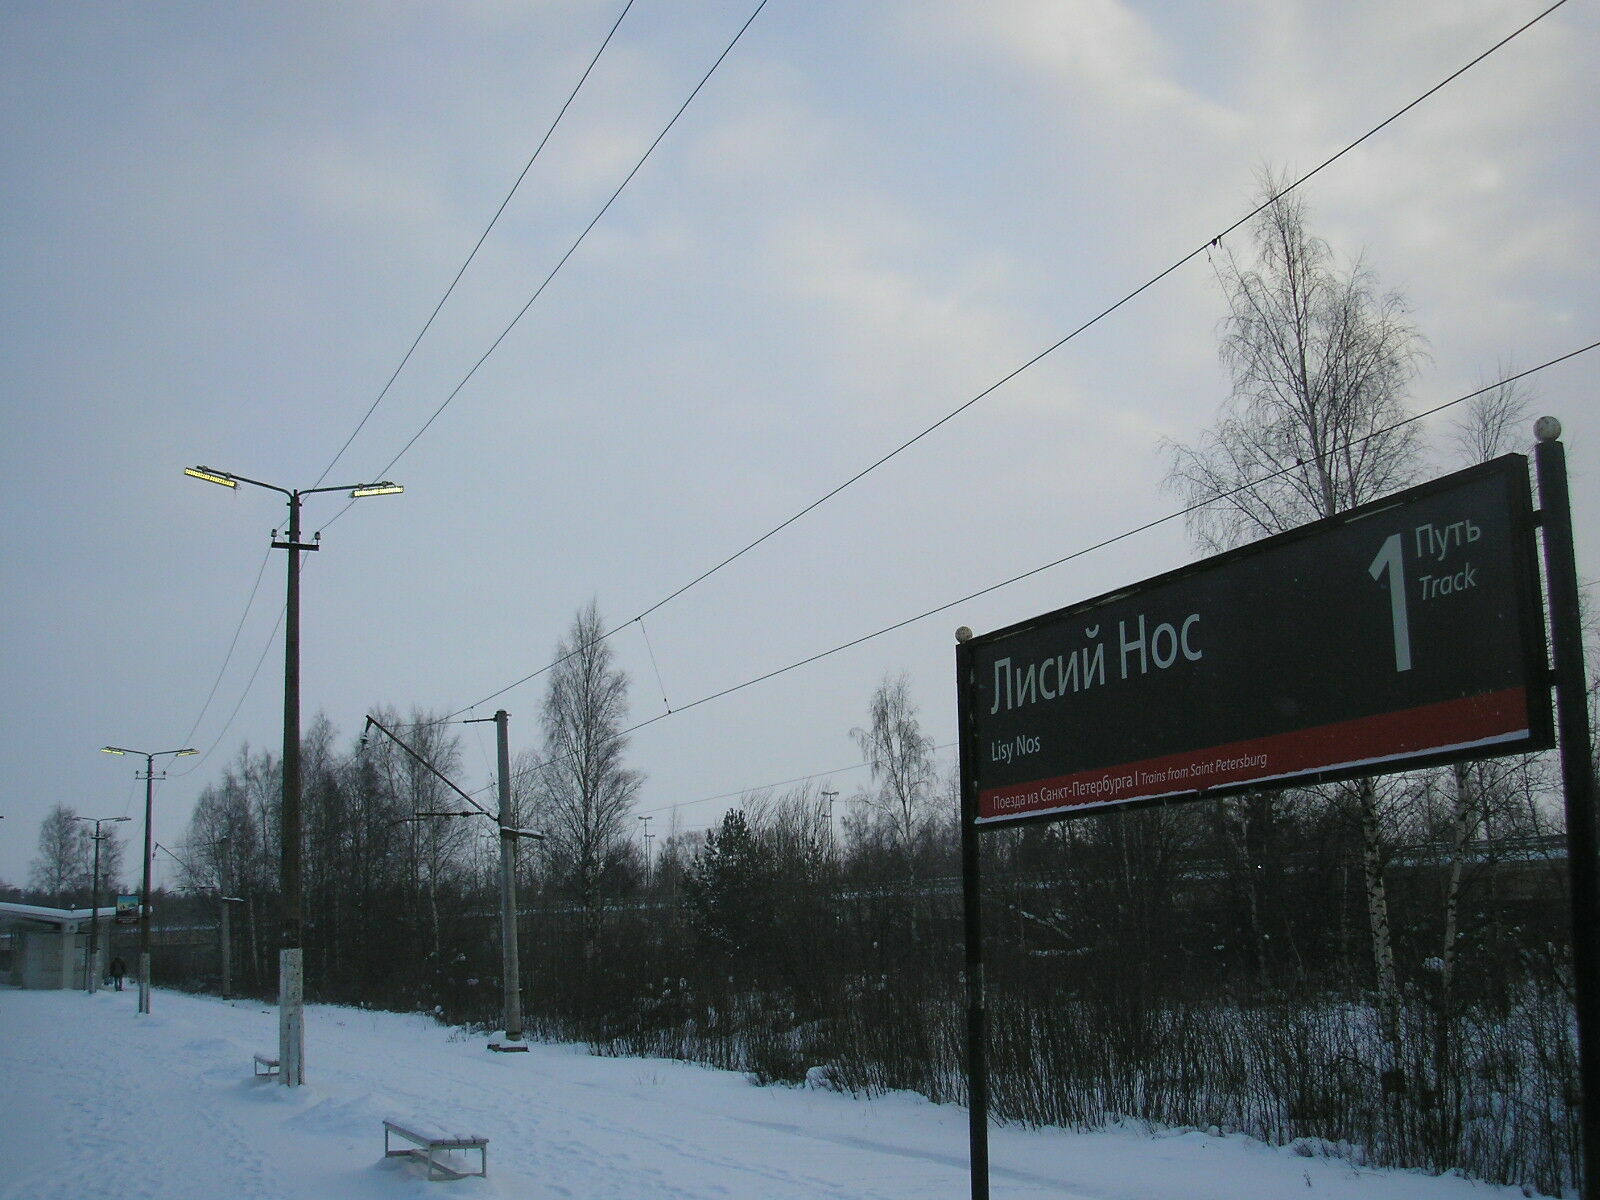 Наружное освещение на ж/д станции "Лисий Нос" Сестрорецкого направления включено круглосуточно.